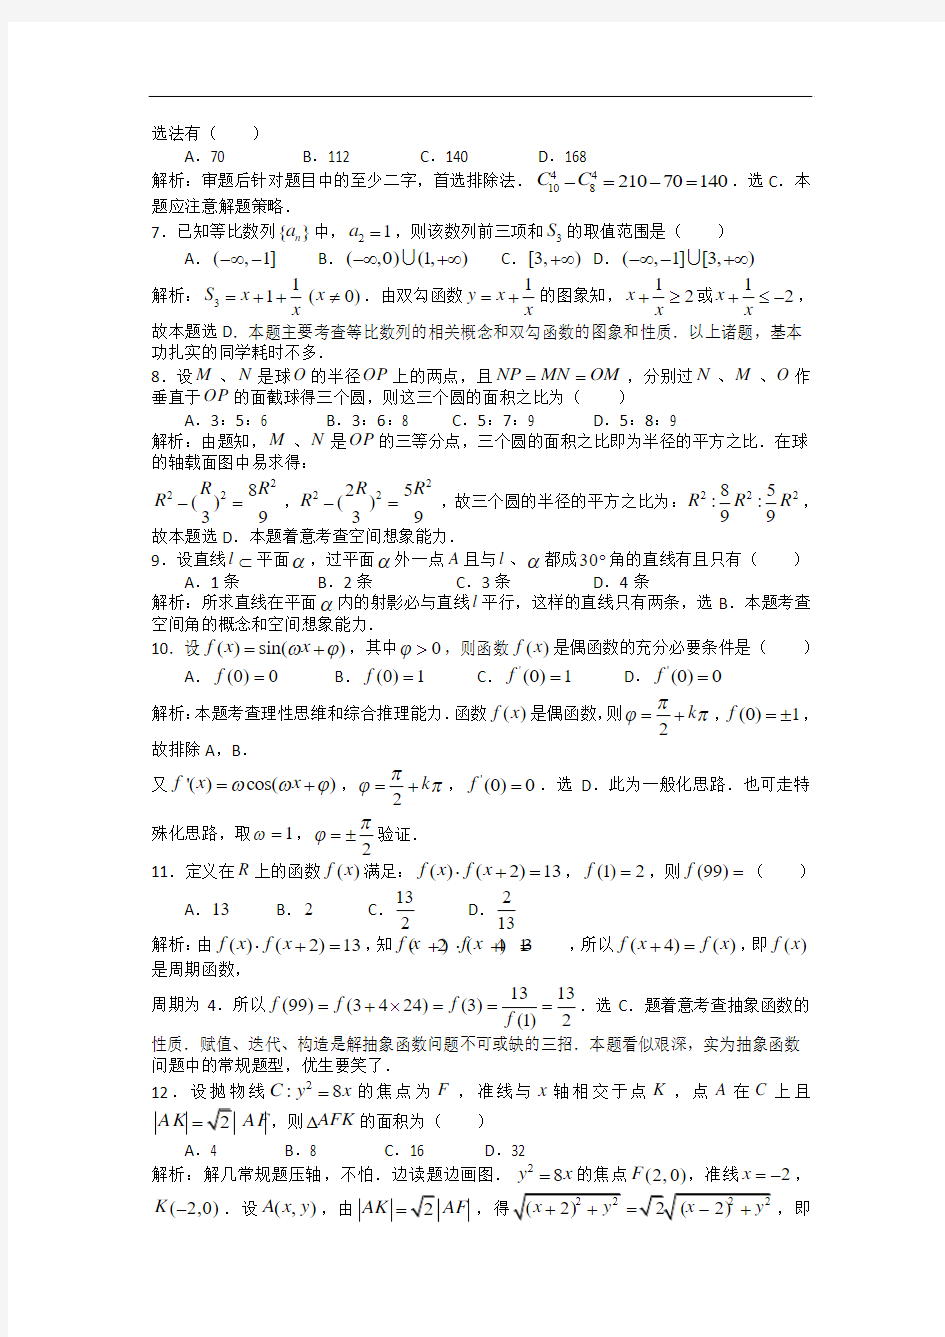 2008年高考试题——数学理(四川卷)